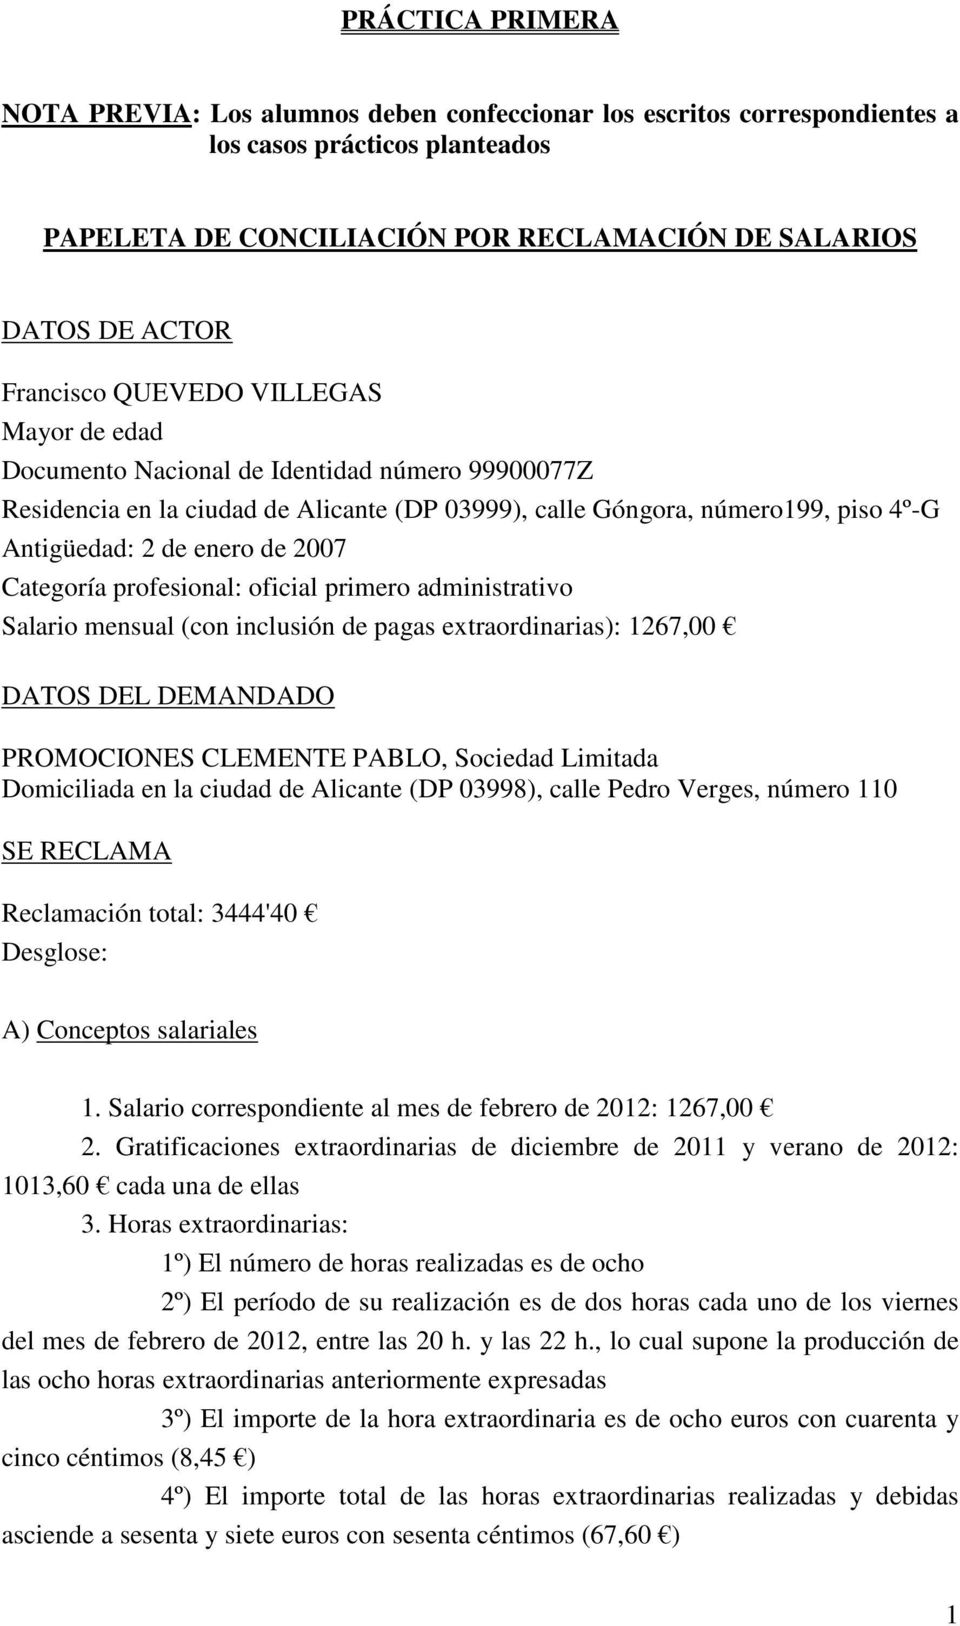 profesional: oficial primero administrativo Salario mensual (con inclusión de pagas extraordinarias): 1267,00 PROMOCIONES CLEMENTE PABLO, Sociedad Limitada Domiciliada en la ciudad de Alicante (DP